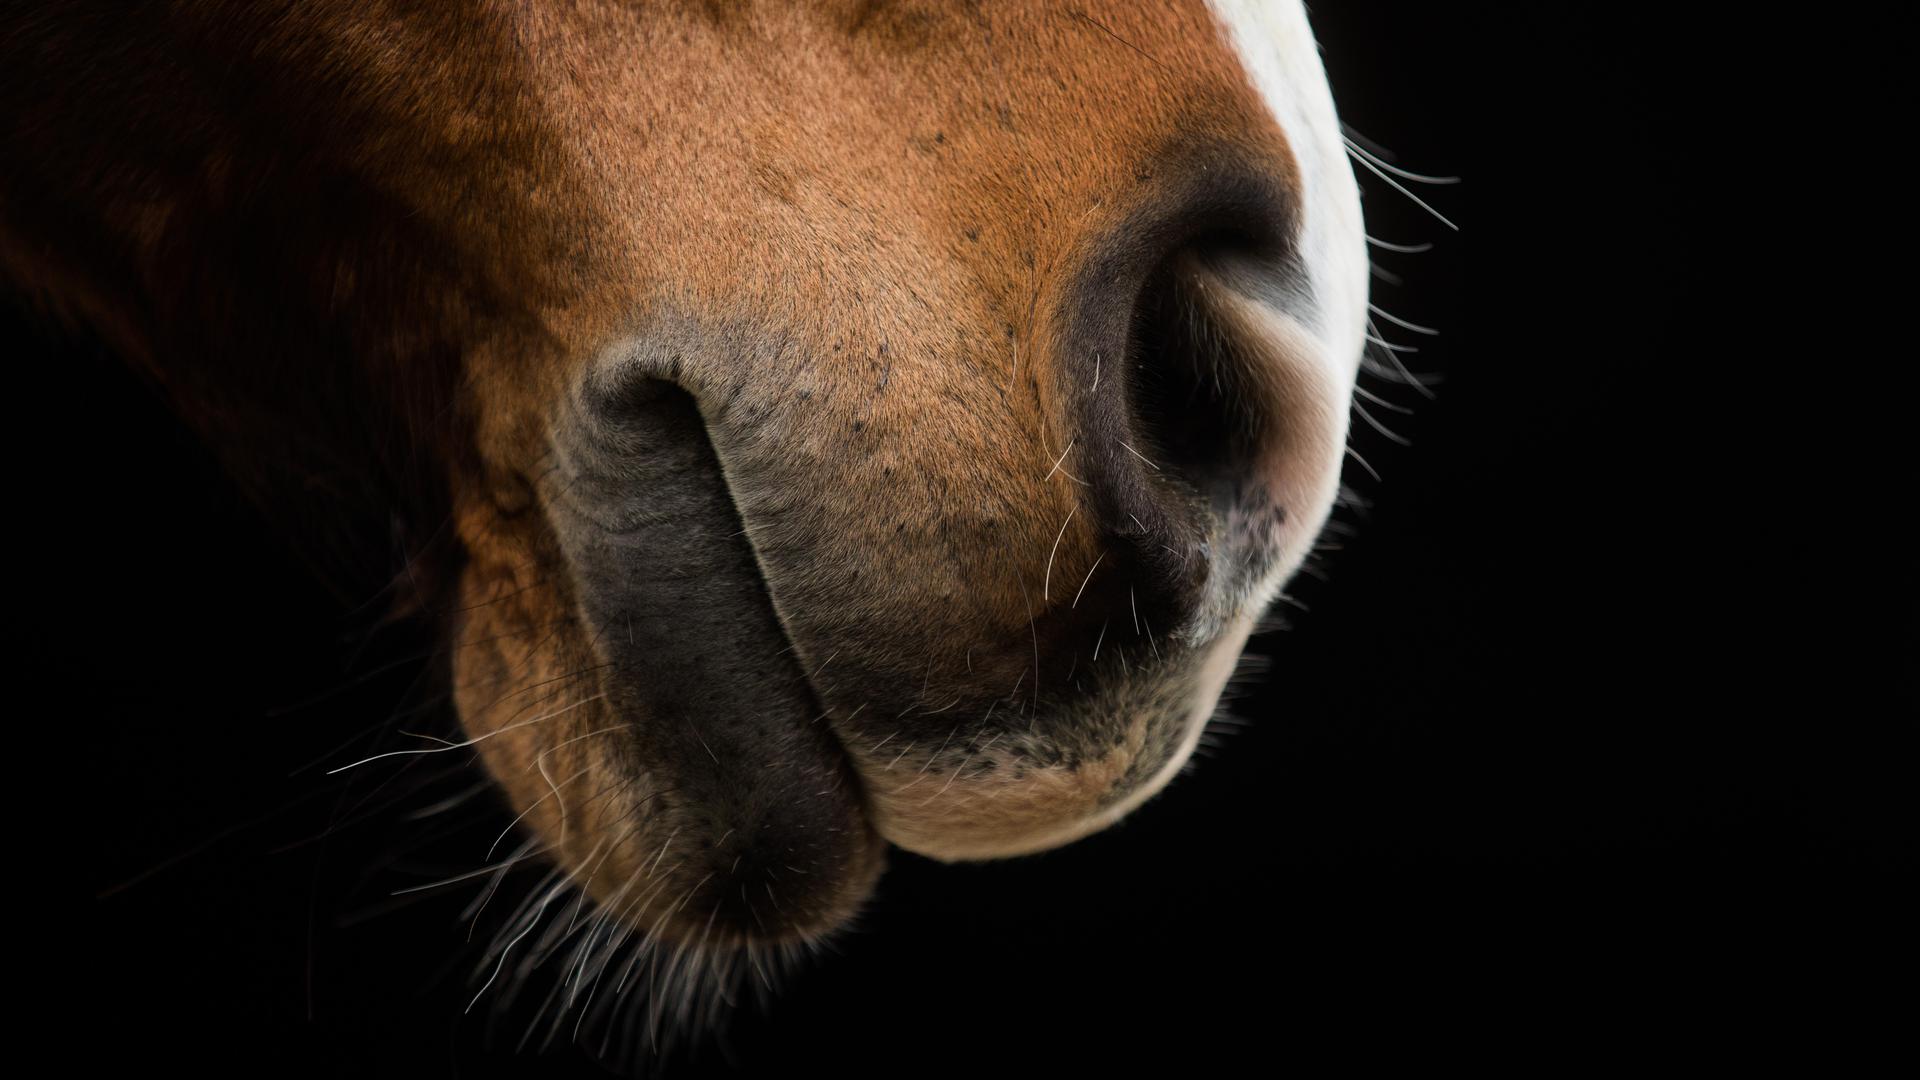 Das Maul eines Pferdes, fotografiert bei einem Vorschautermin für eine Pferdemesse. (Illustration zu dpa: "Virus-Infektionen: Mehr tote Pferde und Rückkehr in die Ungewissheit") +++ dpa-Bildfunk +++